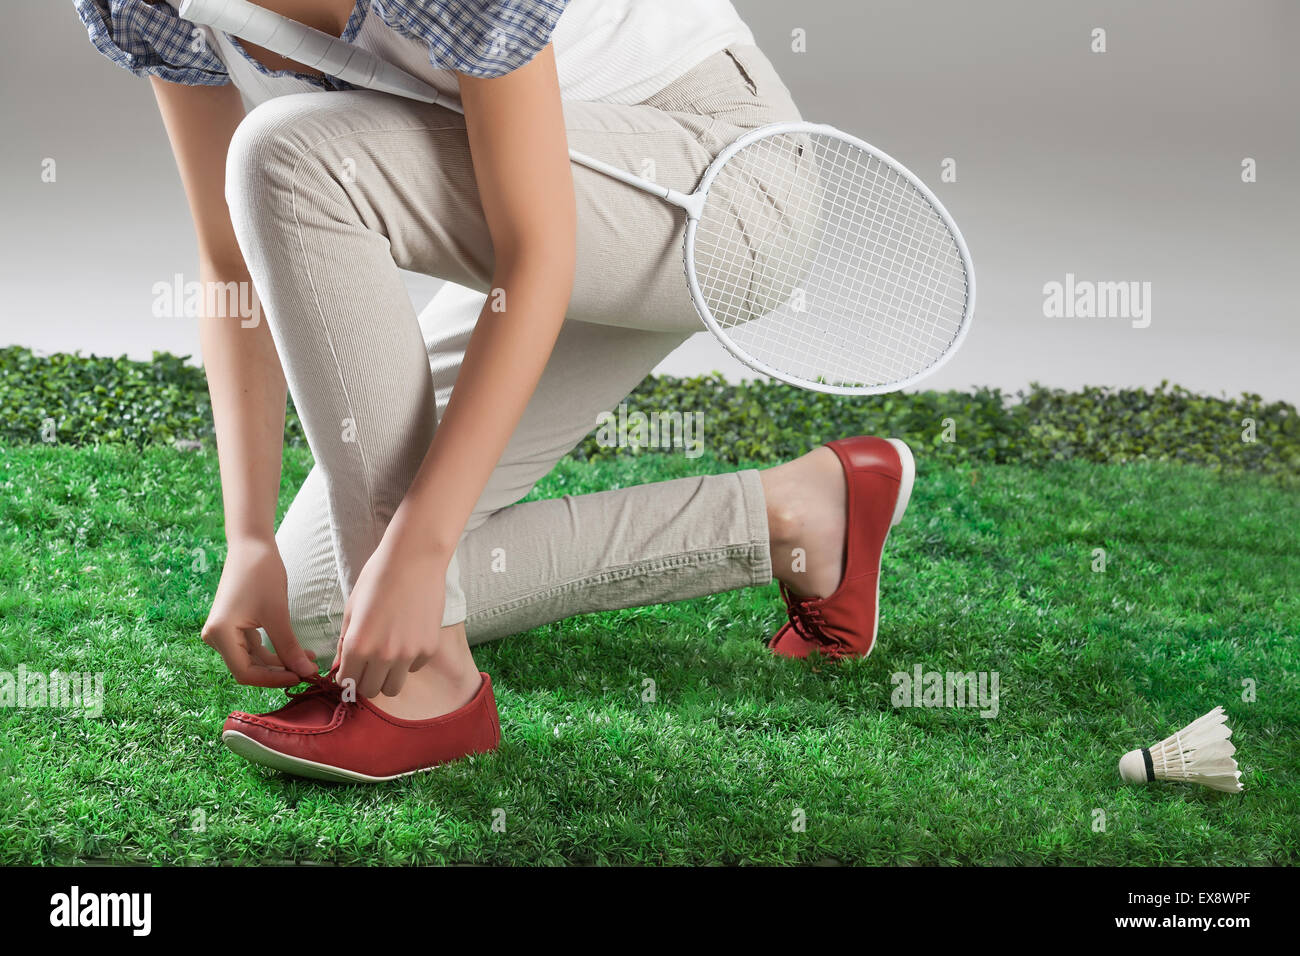 Femme femmes femme féminité badminton raquette jambe volant herbe vert jouer la partie du corps la nature sports close up chaussures de plein air Banque D'Images